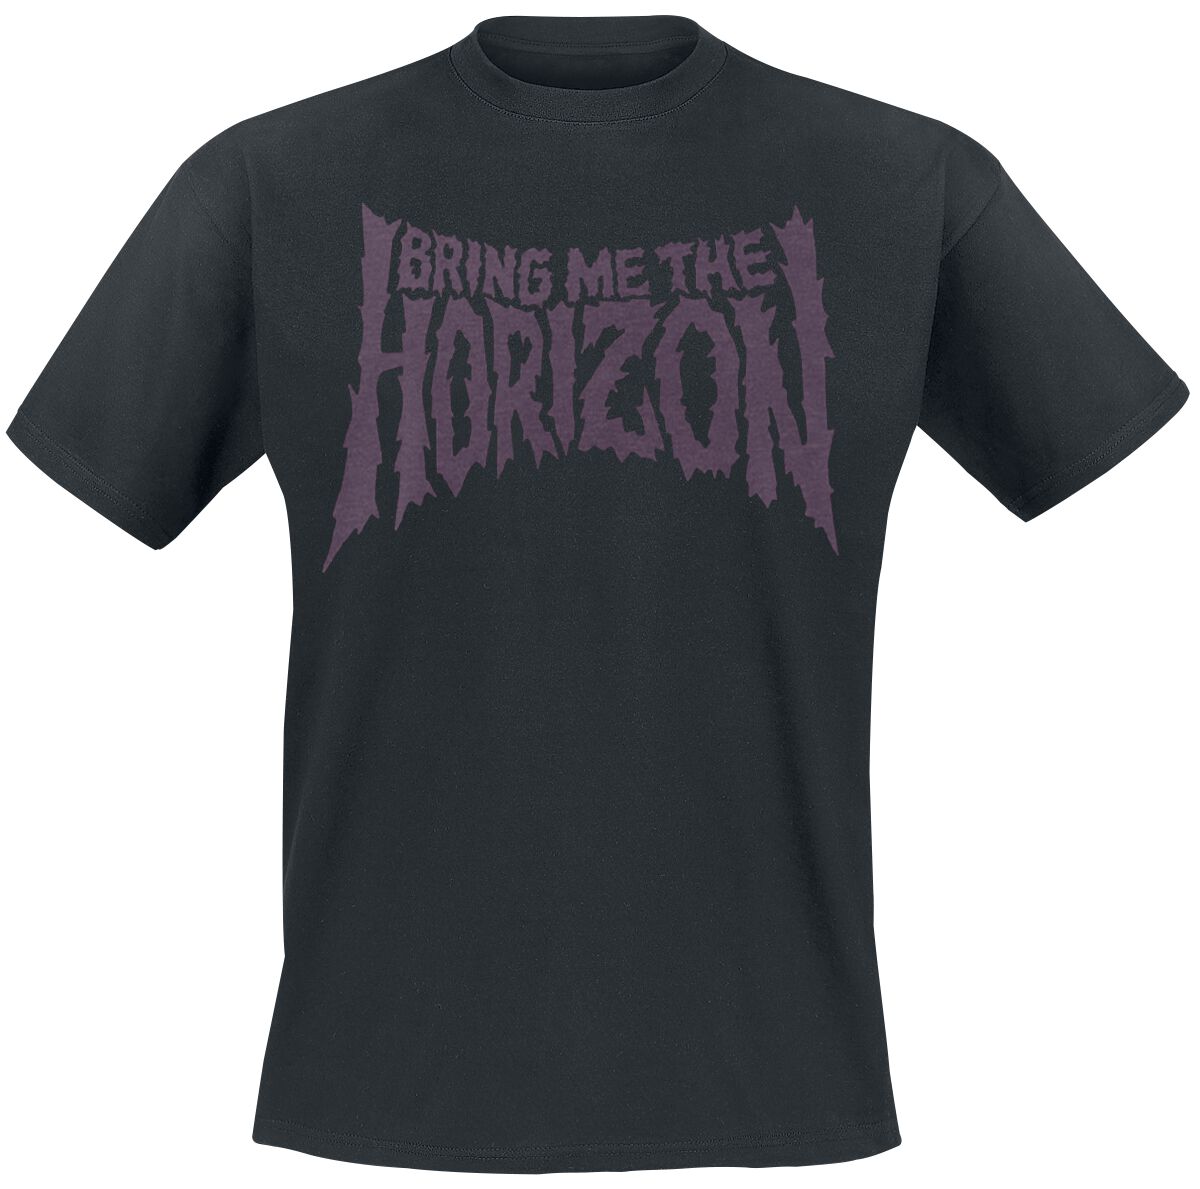 Bring Me The Horizon T-Shirt - Reaper - S bis 3XL - für Männer - Größe XXL - schwarz  - Lizenziertes Merchandise!